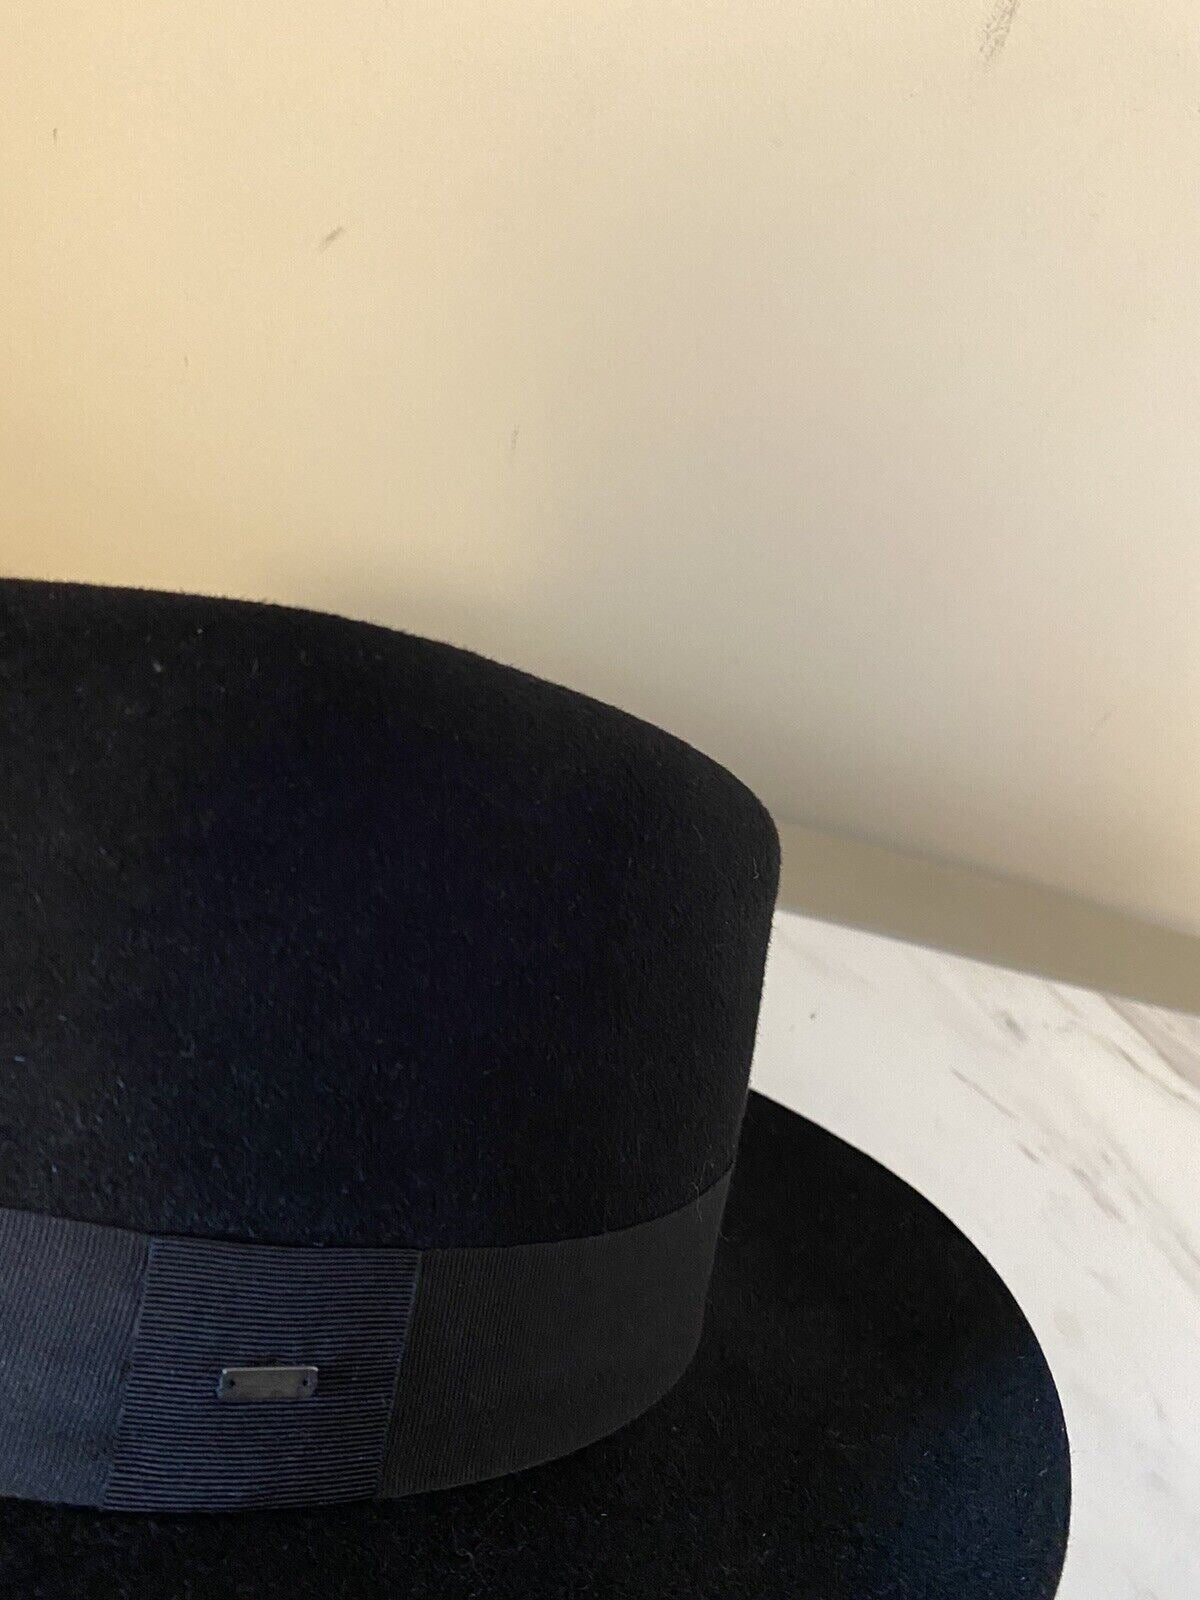 NWT $995 Saint Laurent Мужская шляпа-федора из кроличьего фетра черная, размер S, Италия